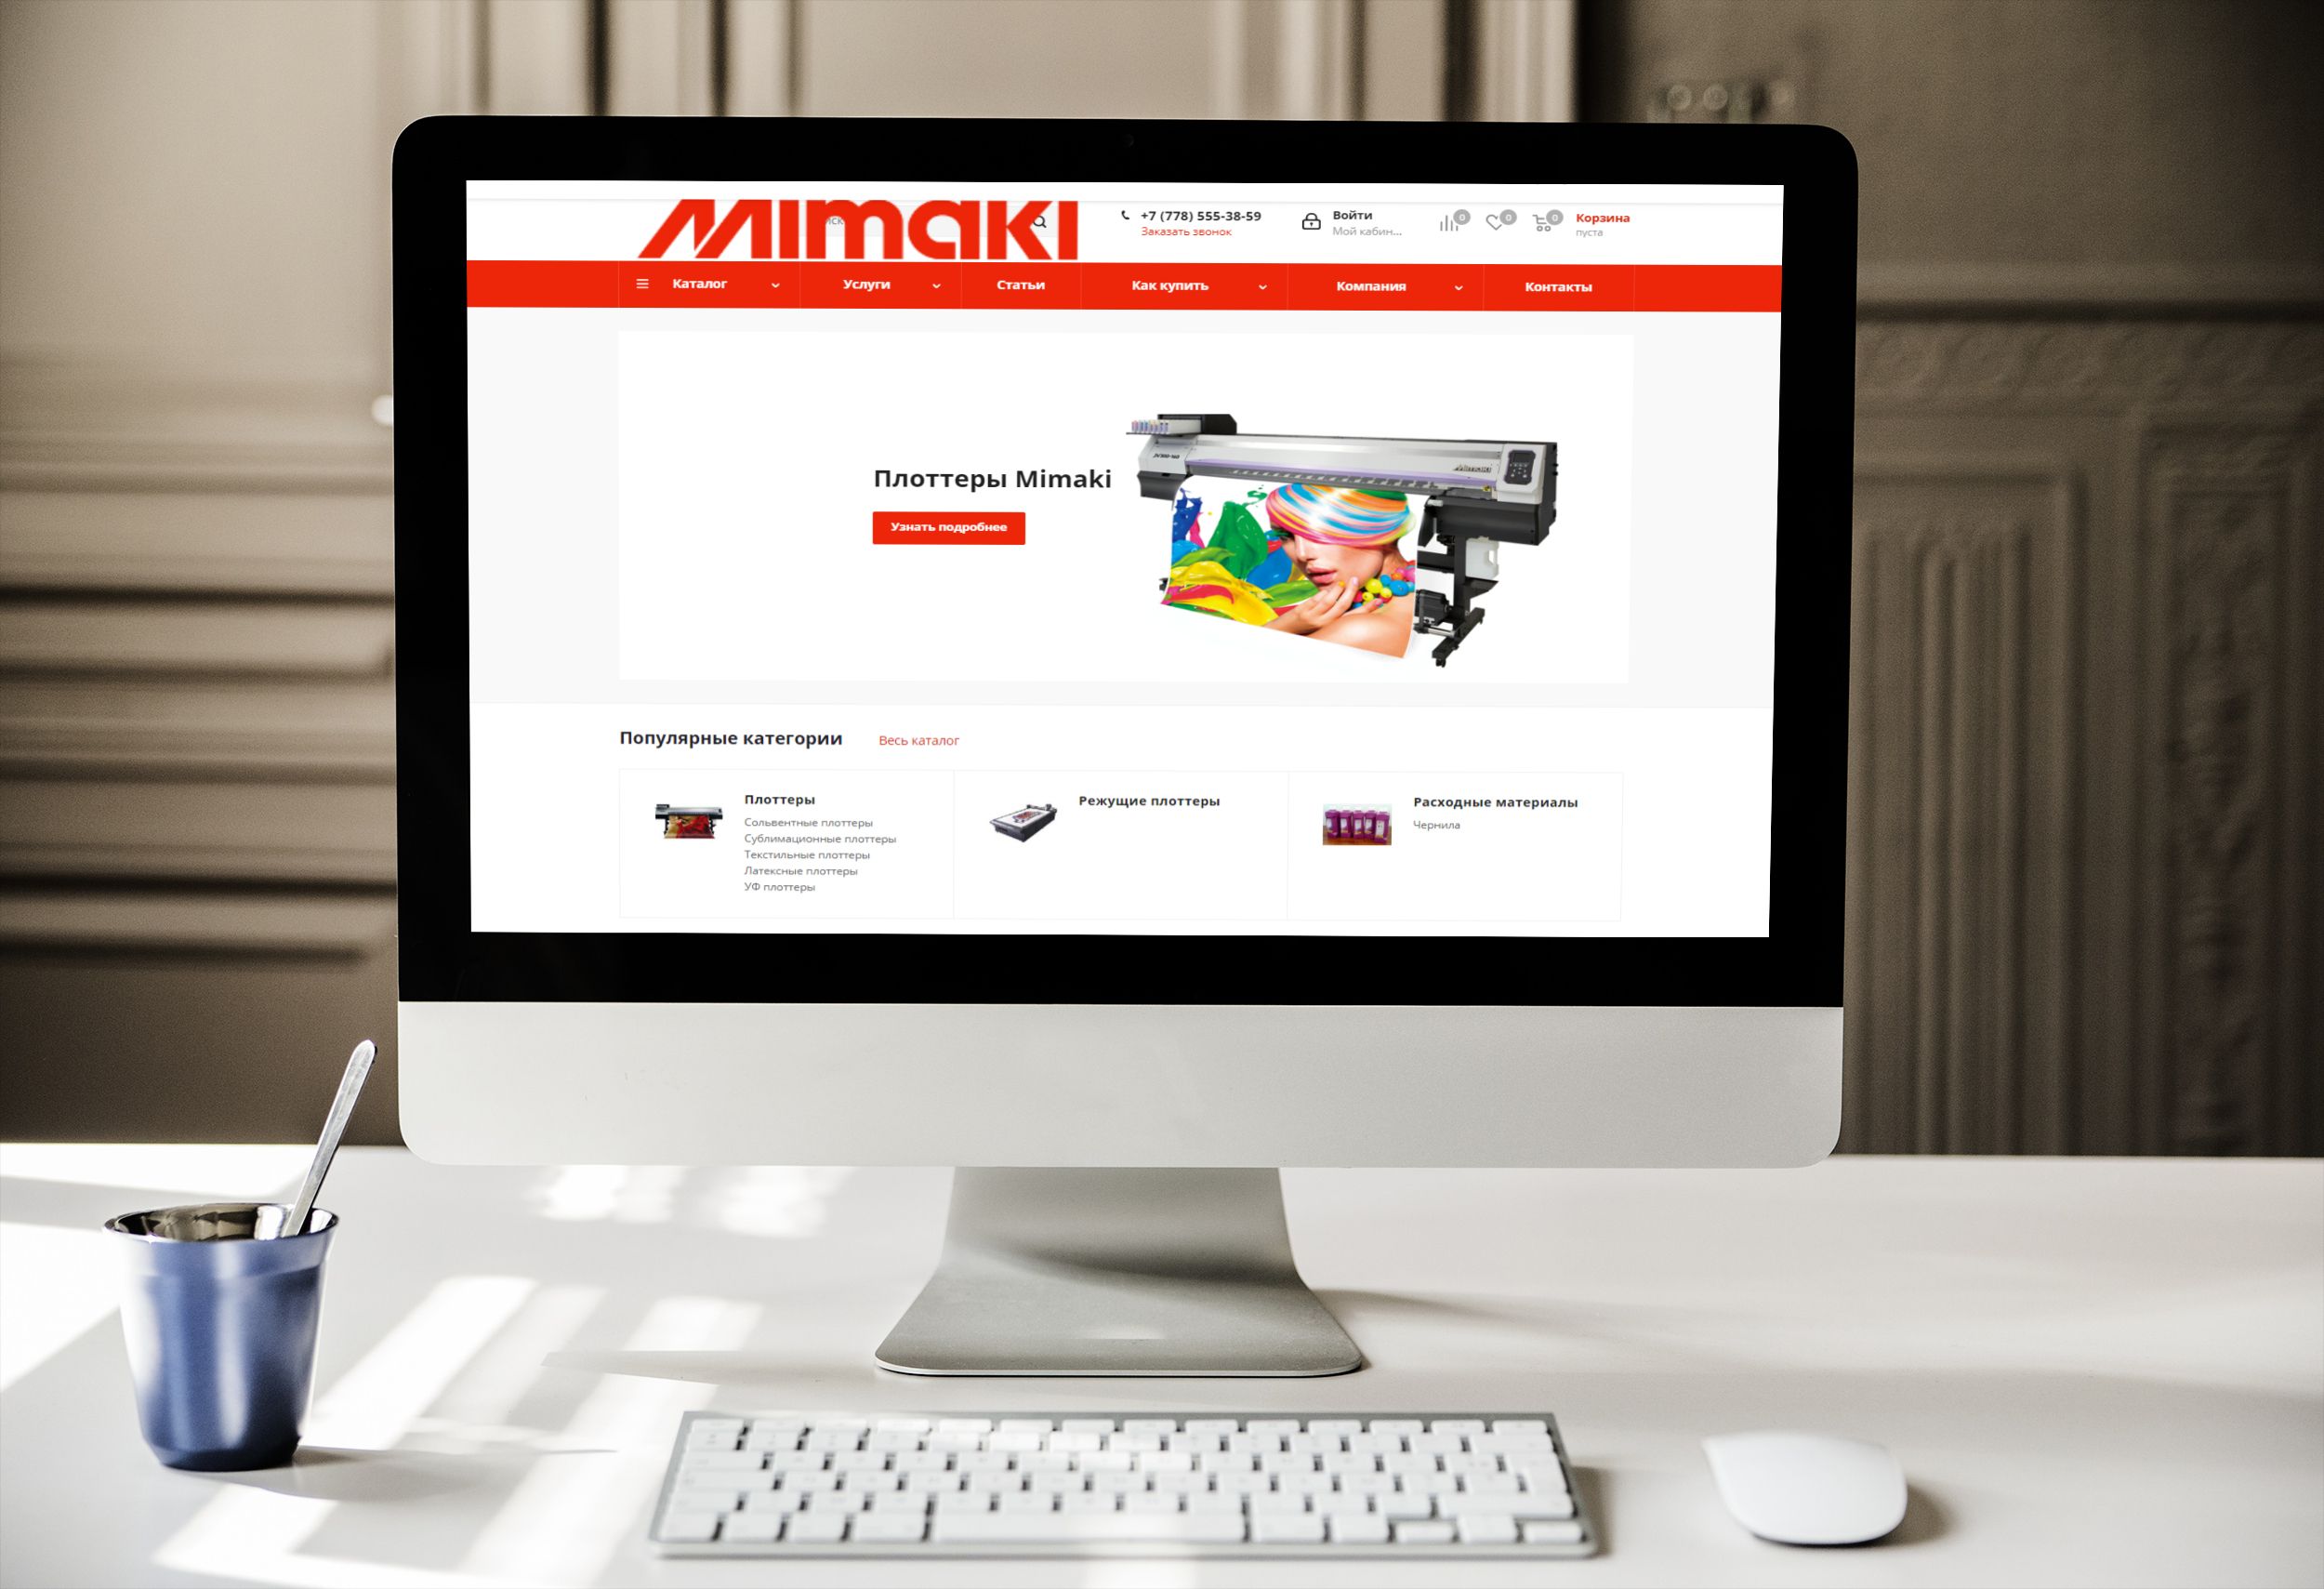 Mimaki.kz: создание сайта для продажи плоттеров и расходных материалов